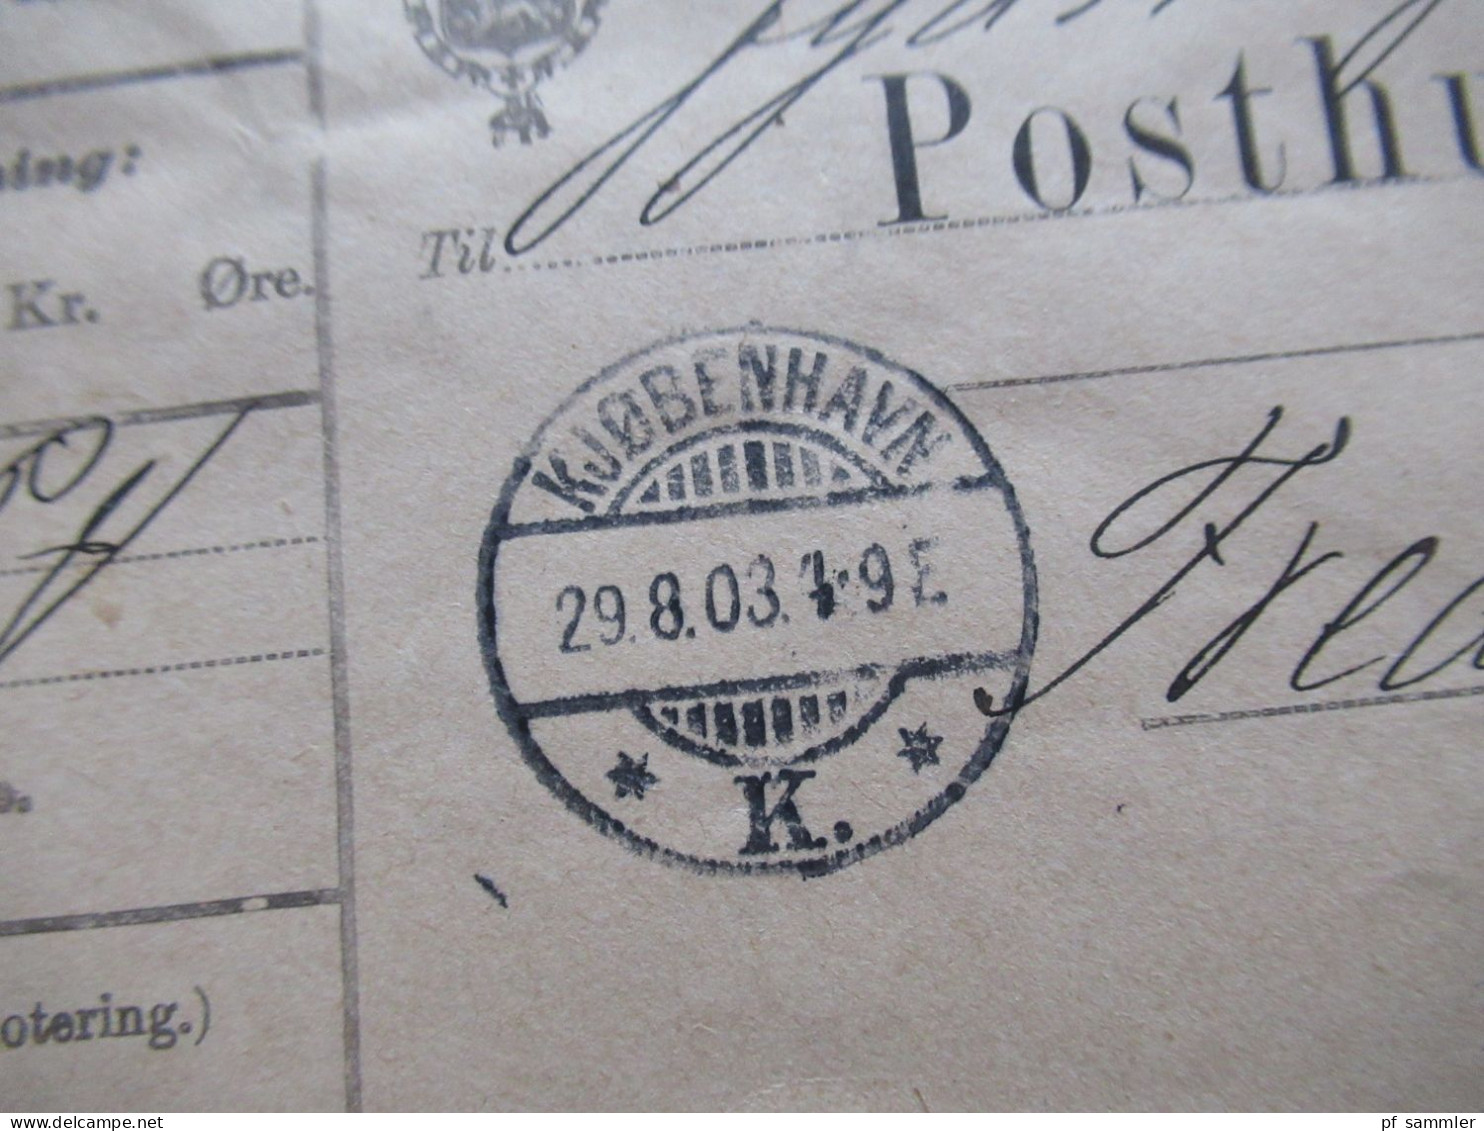 Dänemark 1903 Ziffern im Rahmen Paketkarte mit 4x 50 Öre als waagerechter 4er Streifen MiF